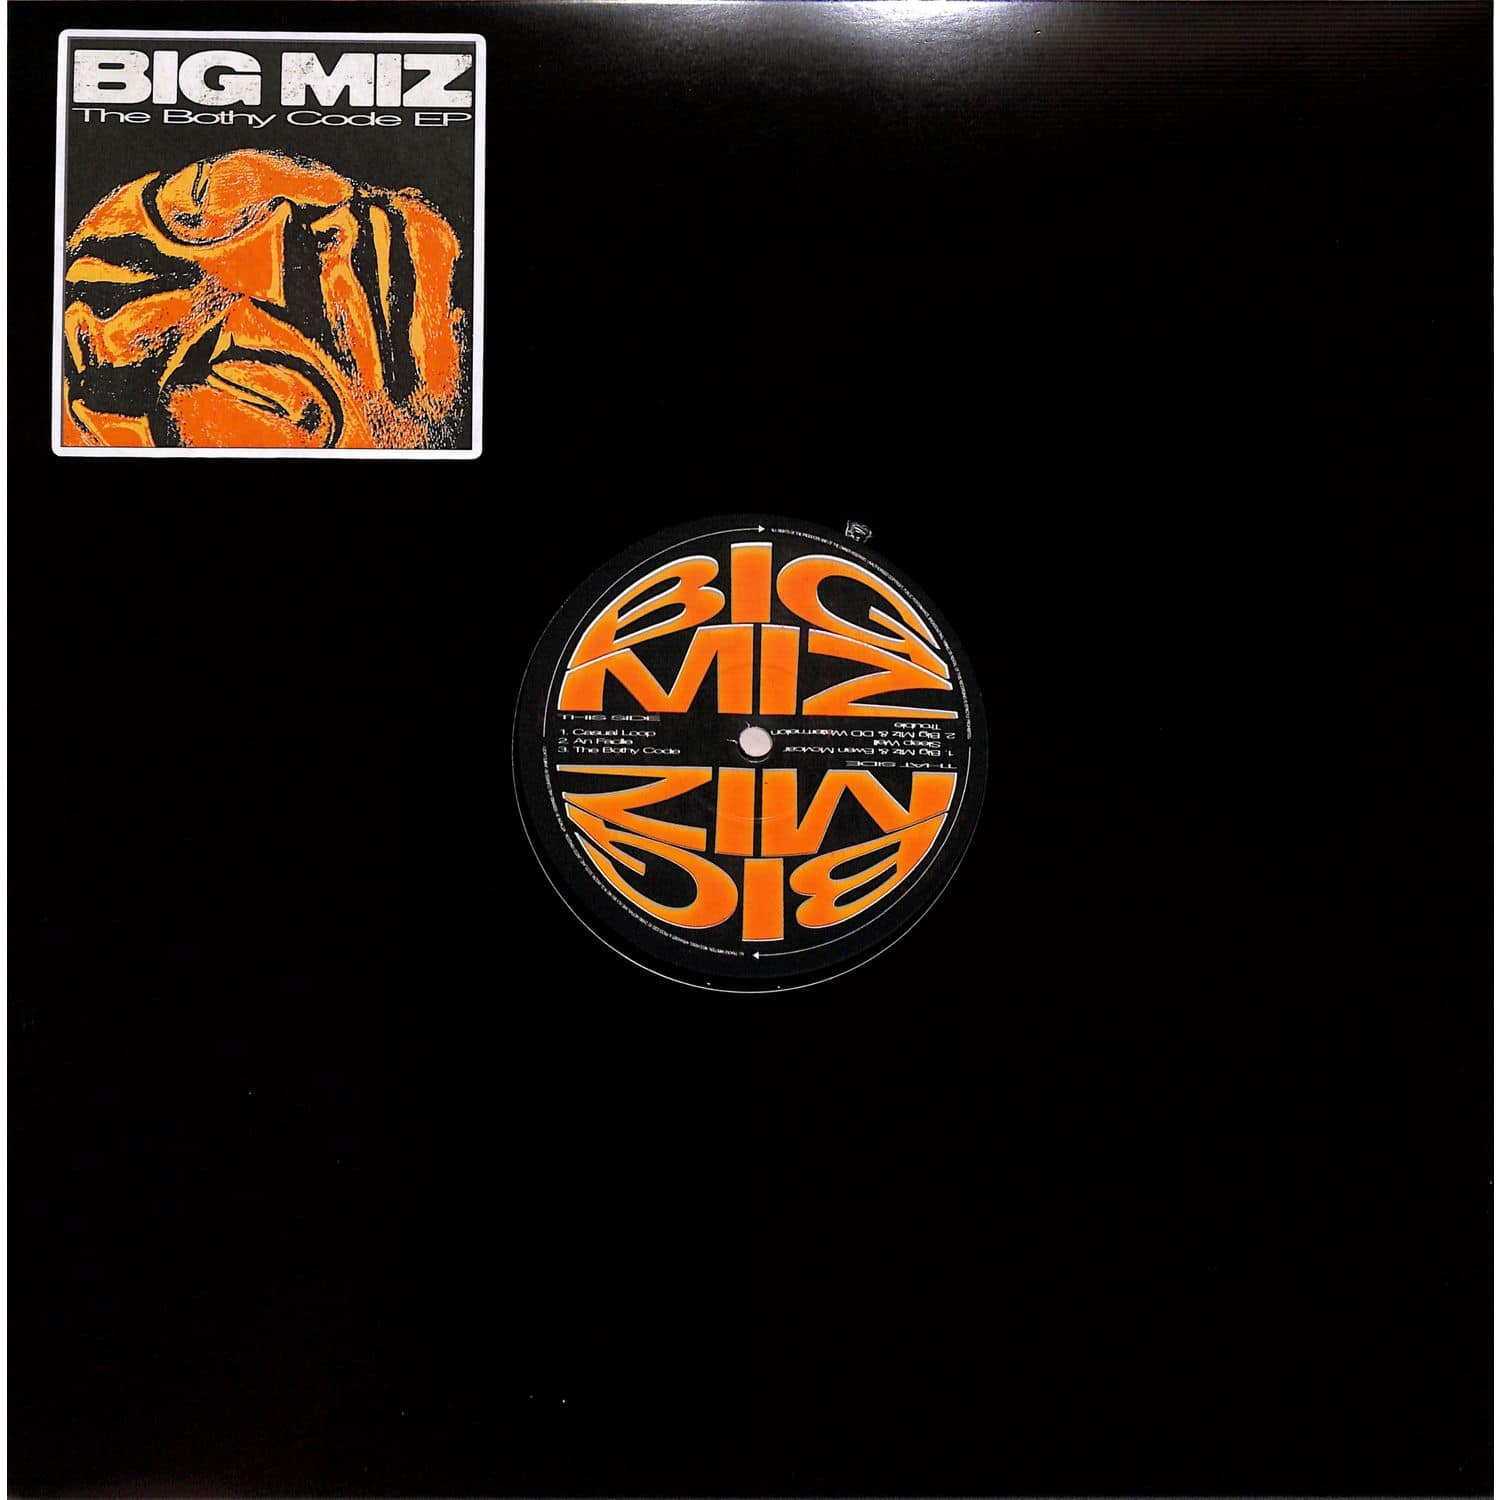 Big Mix - THE BOTHY CODE EP